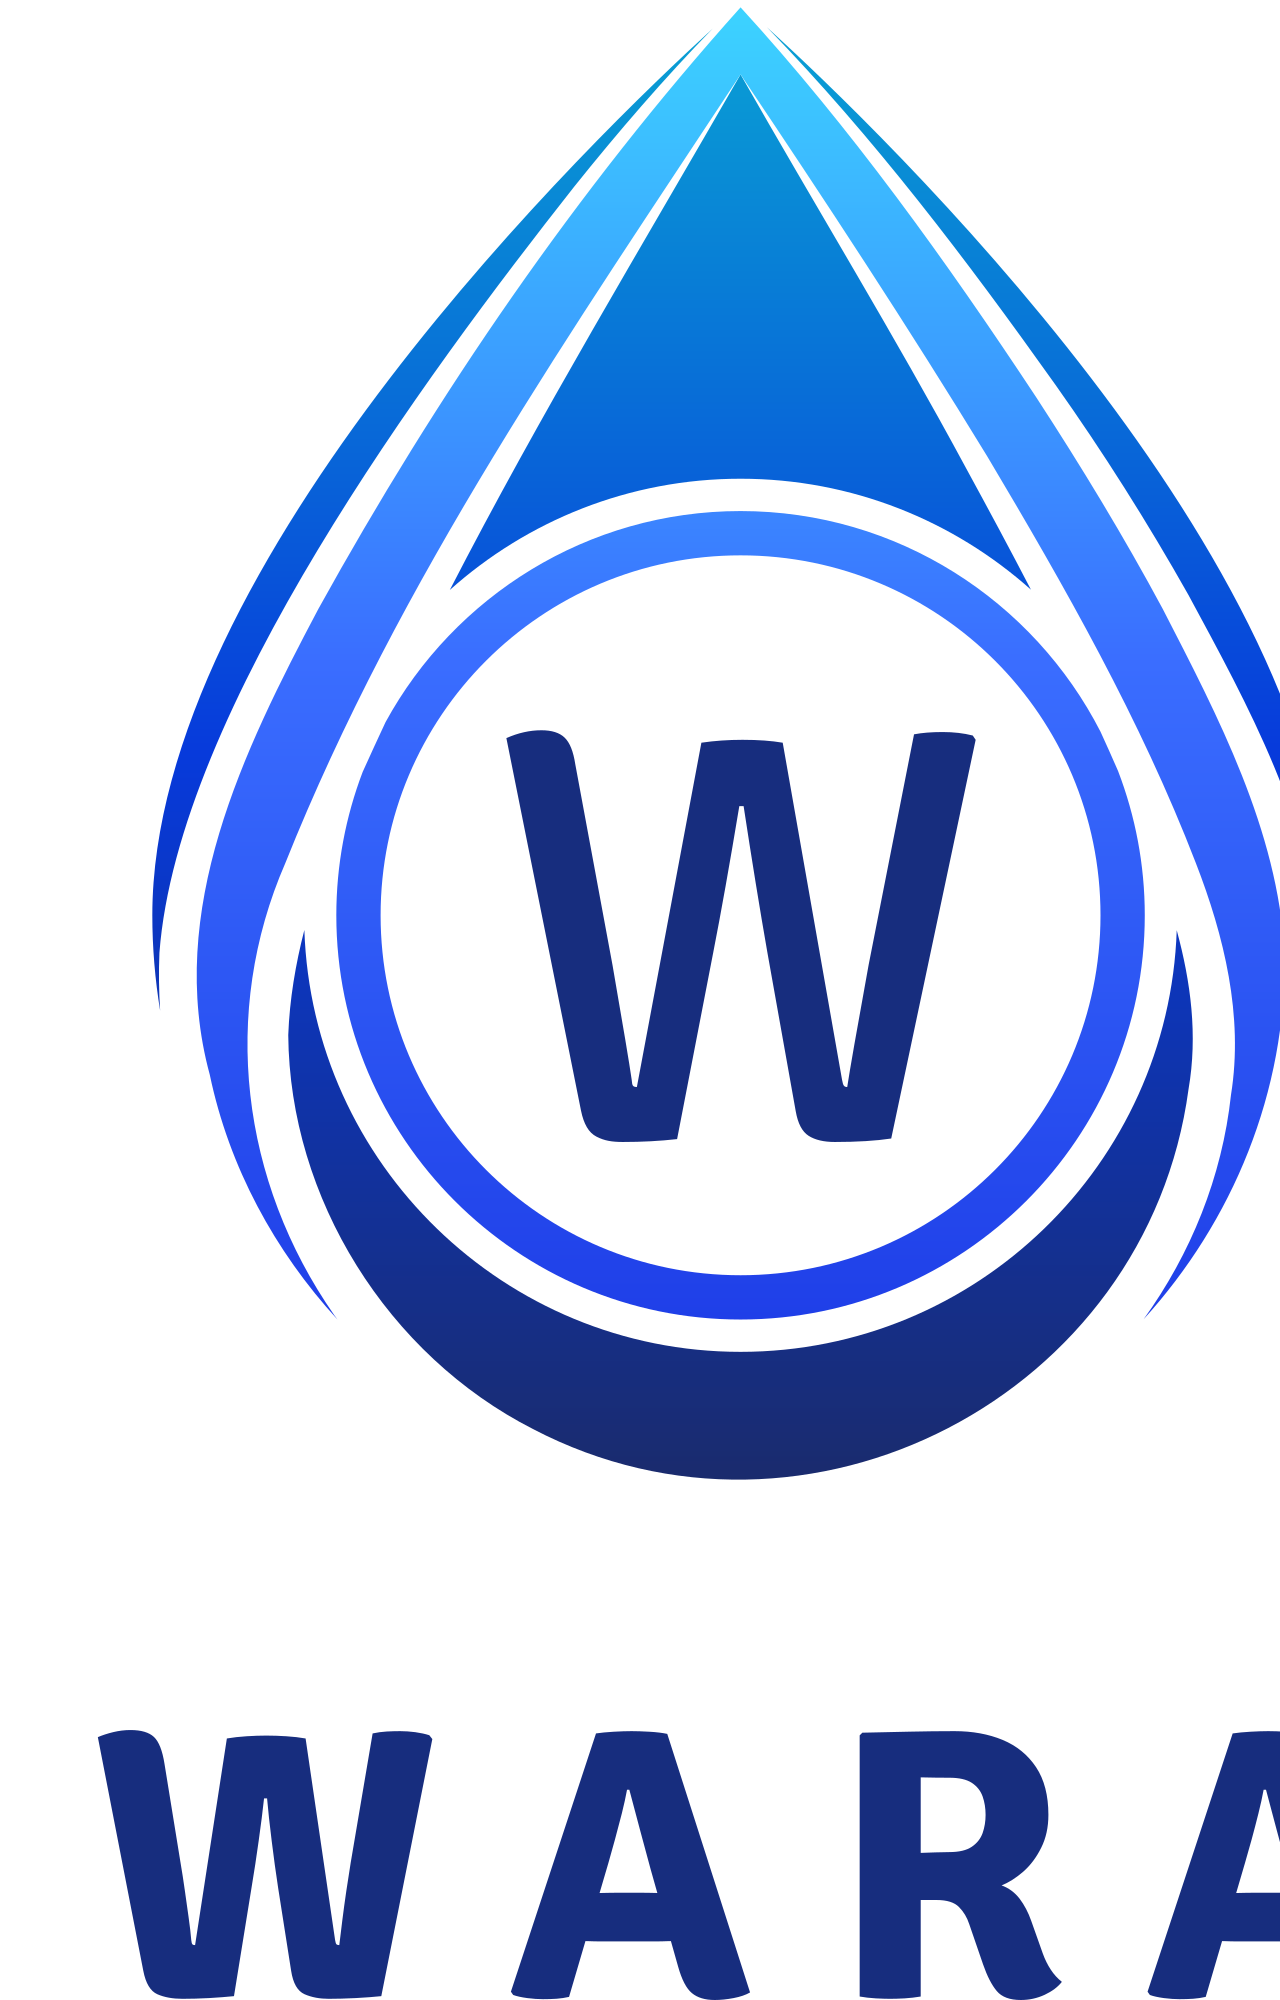 WaRa's logo